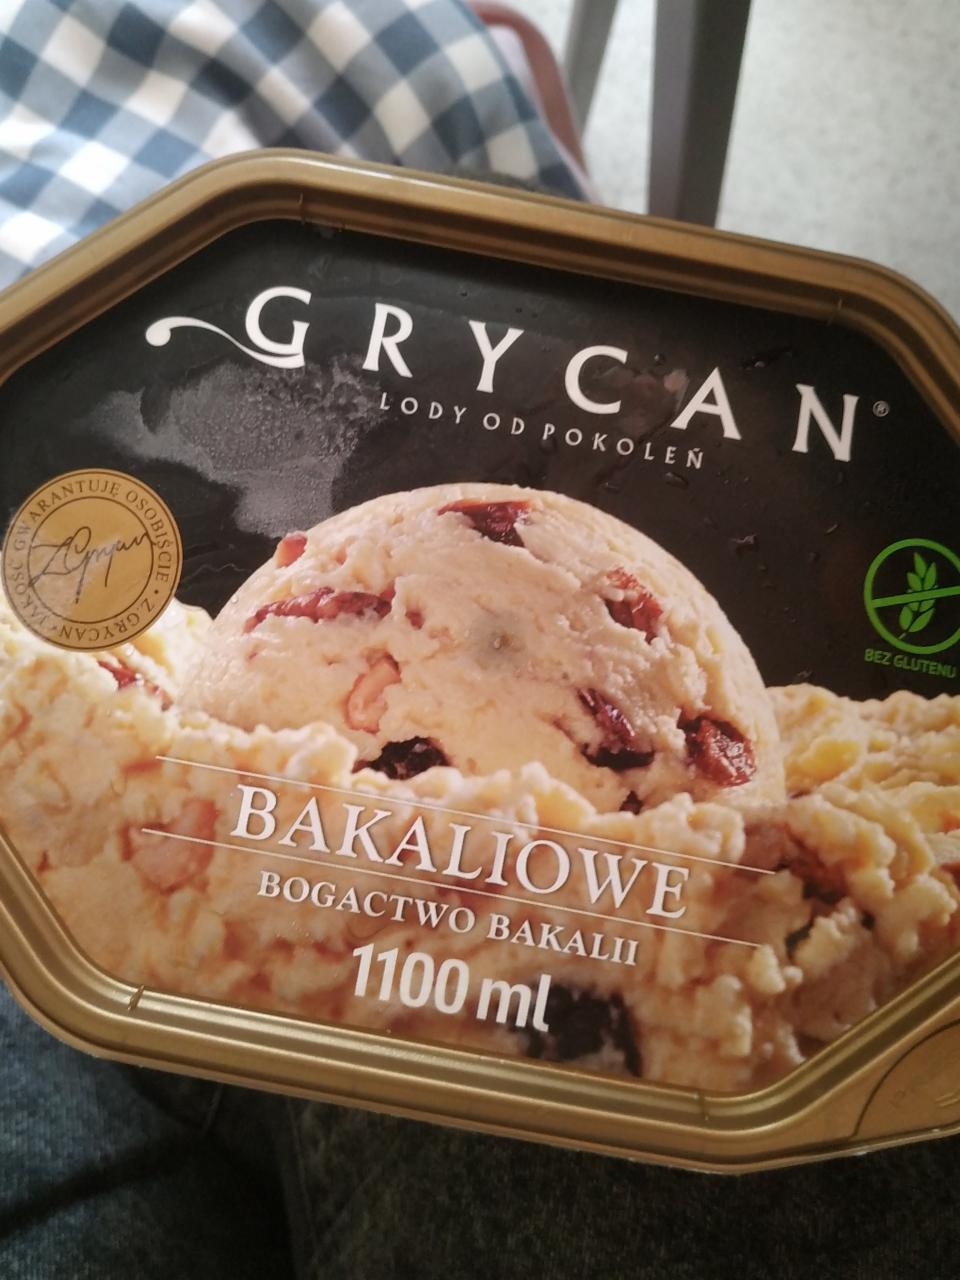 Фото - Морозиво з горіхами Bakaliowe Grycan